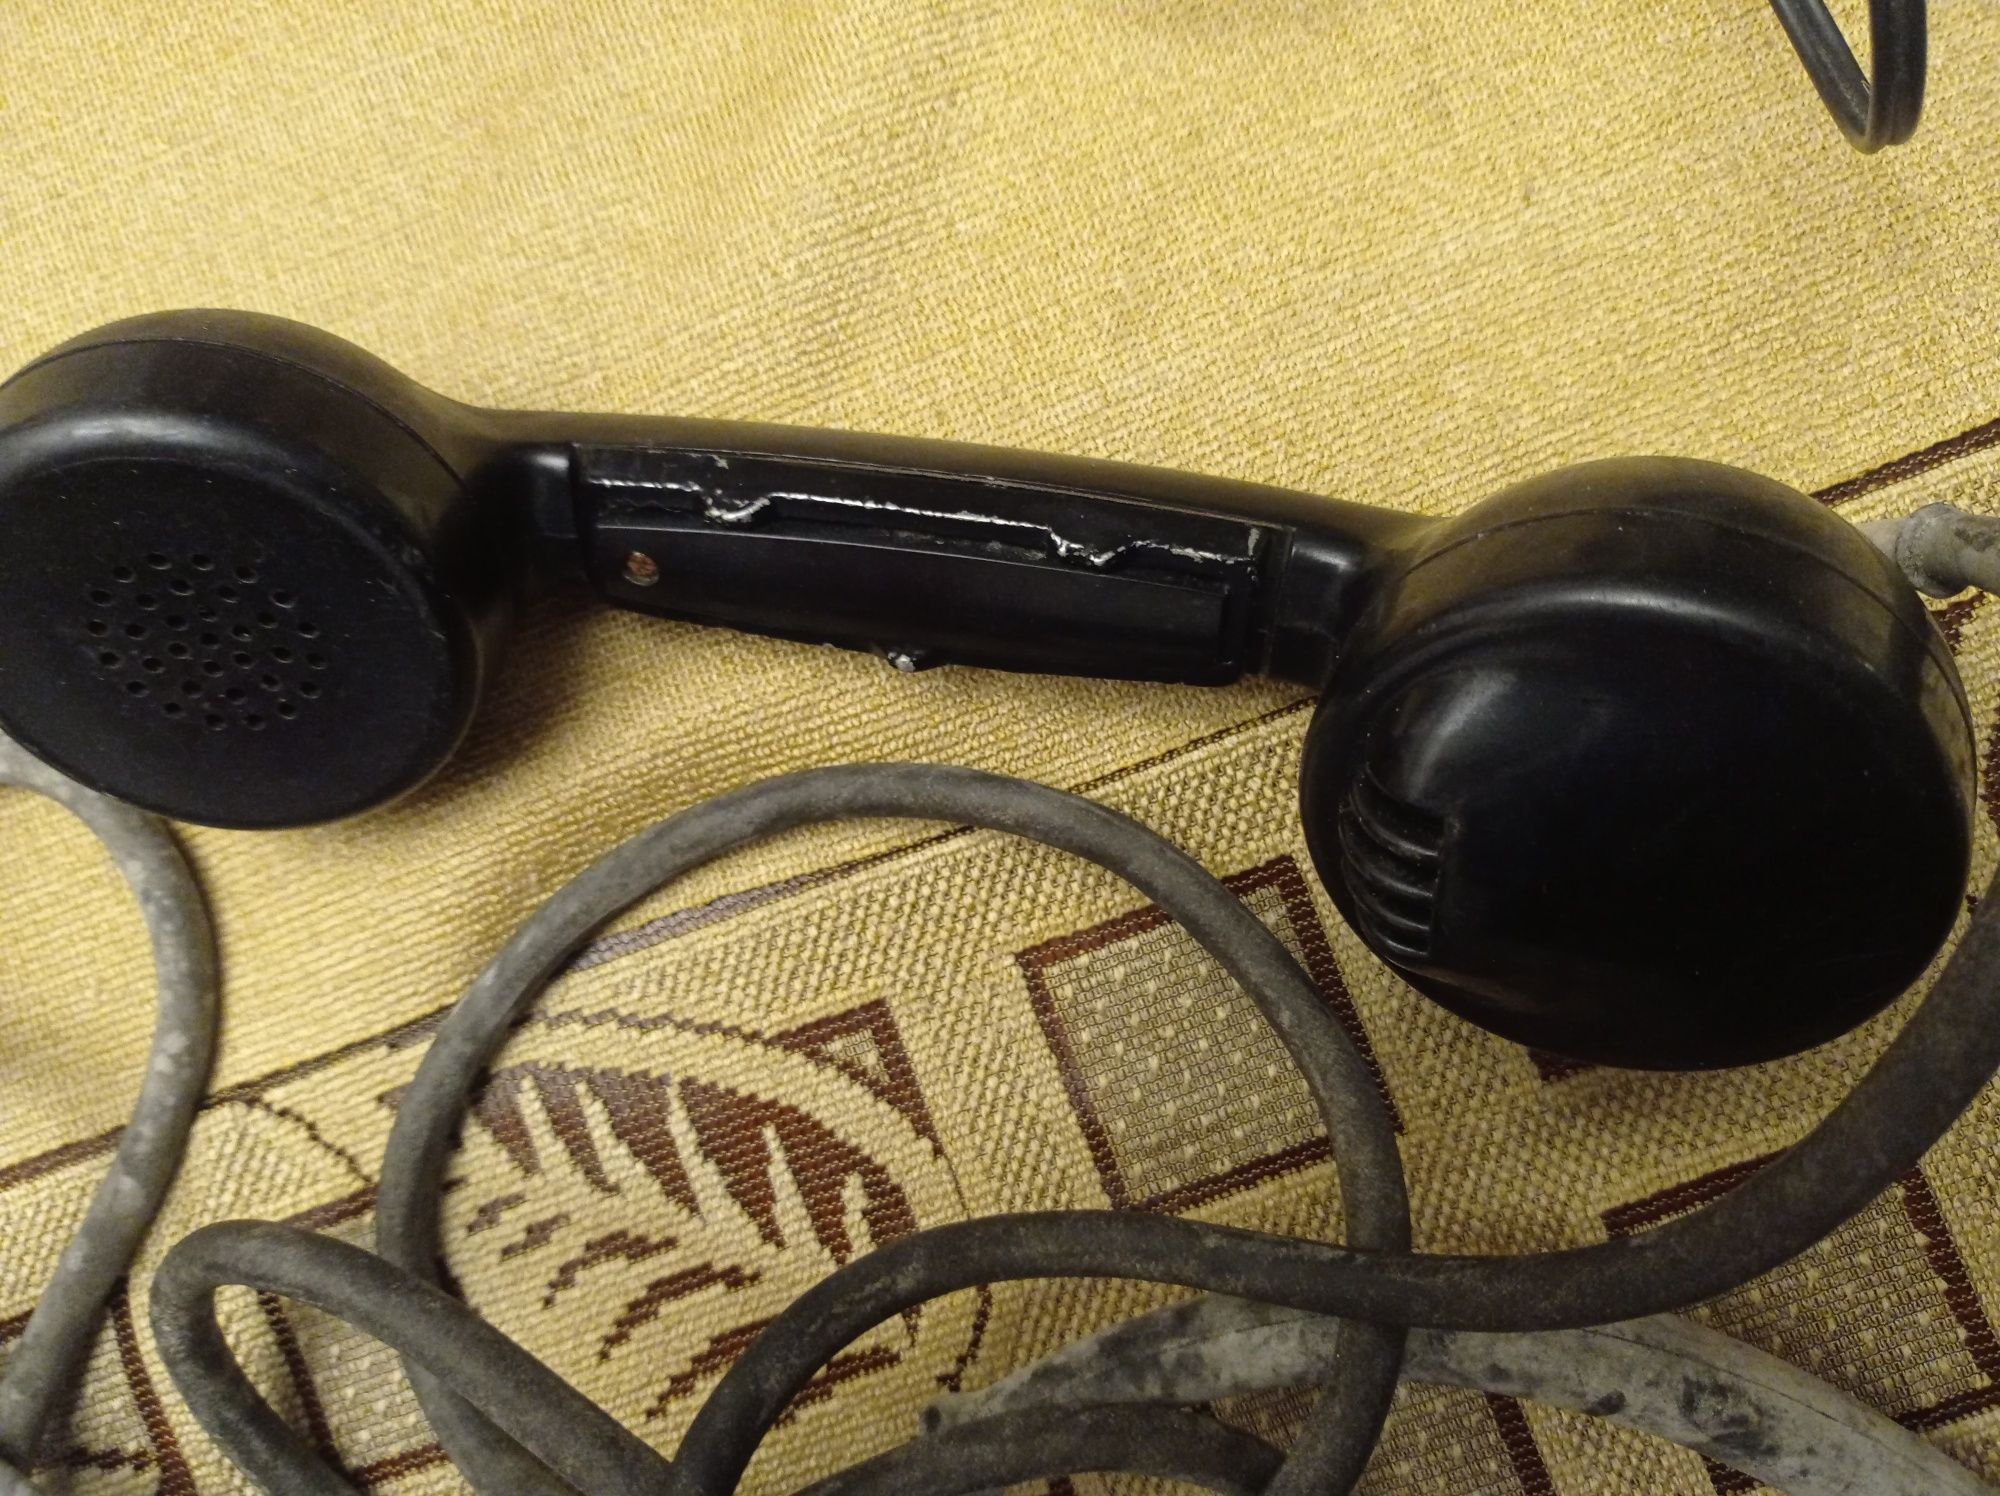 Stare słuchawki do radiotelefonów